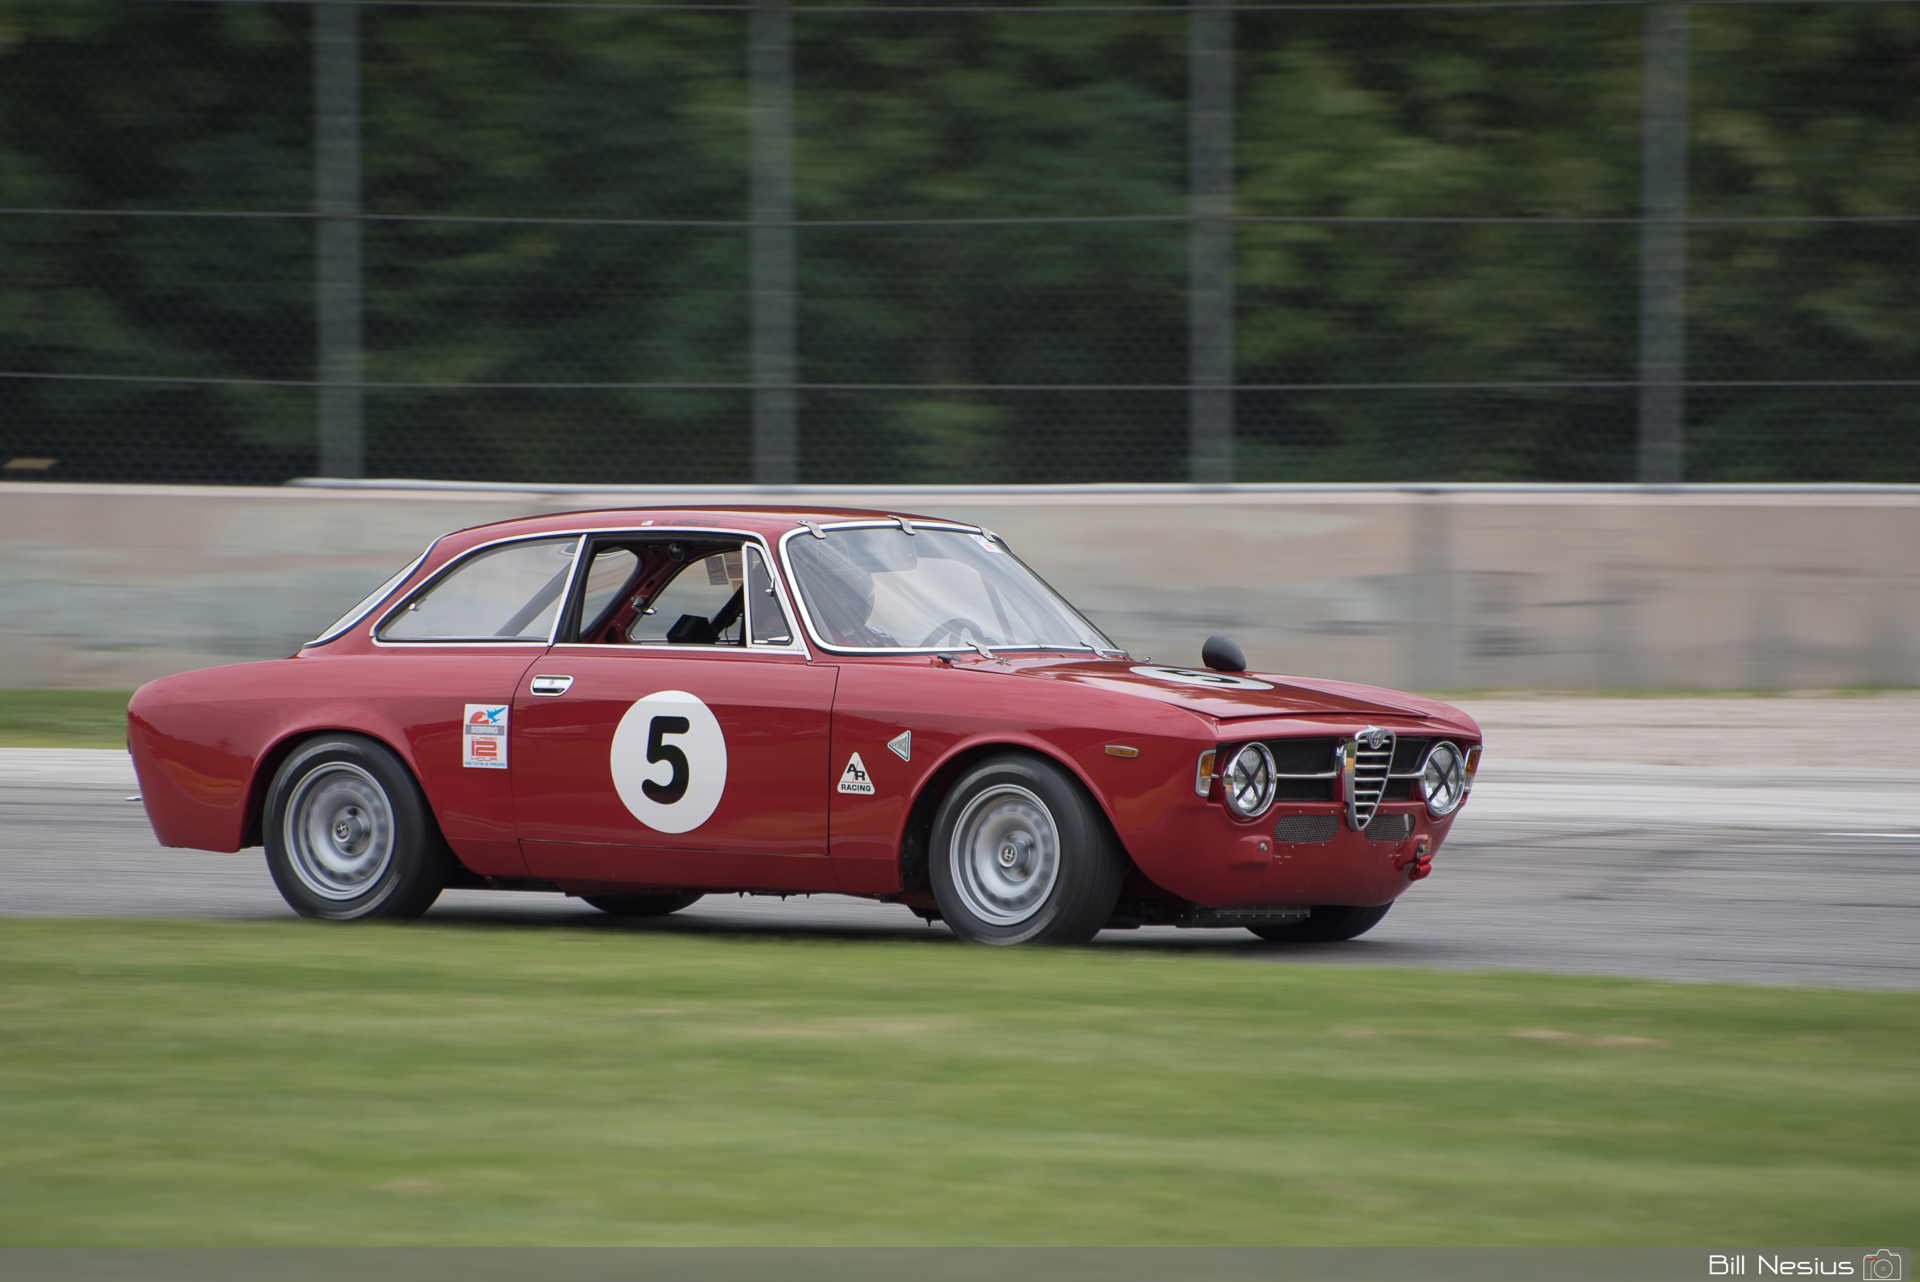 1967 Alfa Romeo GT jr #5 in turn 1 / DSC_4872 / 4